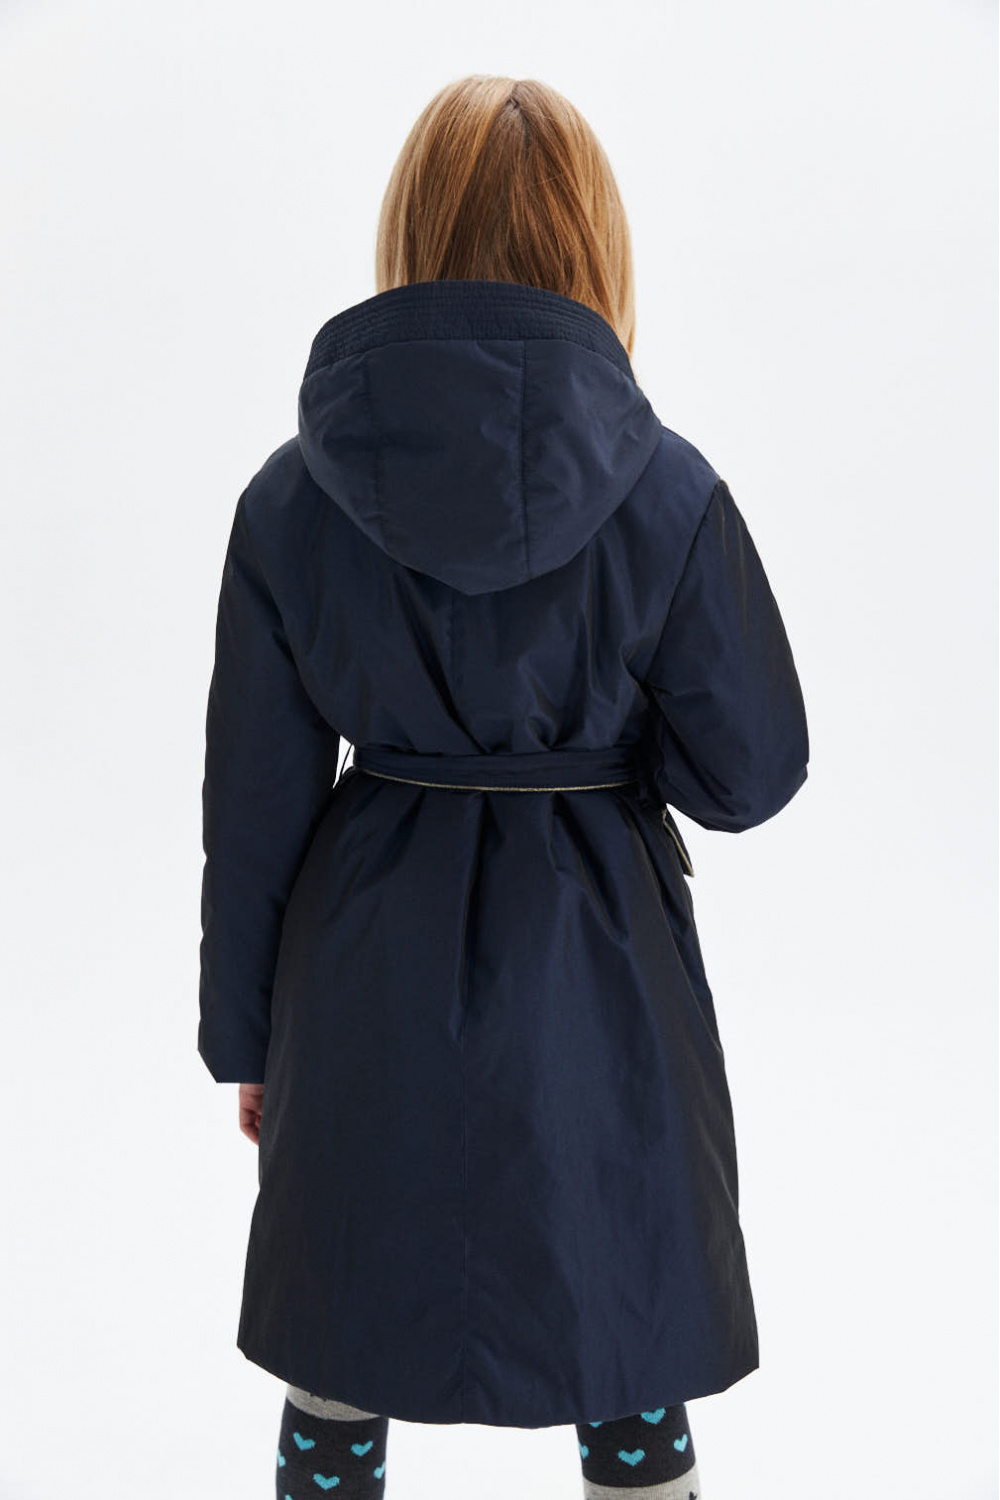 Пальто с утеплителем, из ткани с переливом и блестящим кантом (SSFSG-026-20306-320) Silver spoon